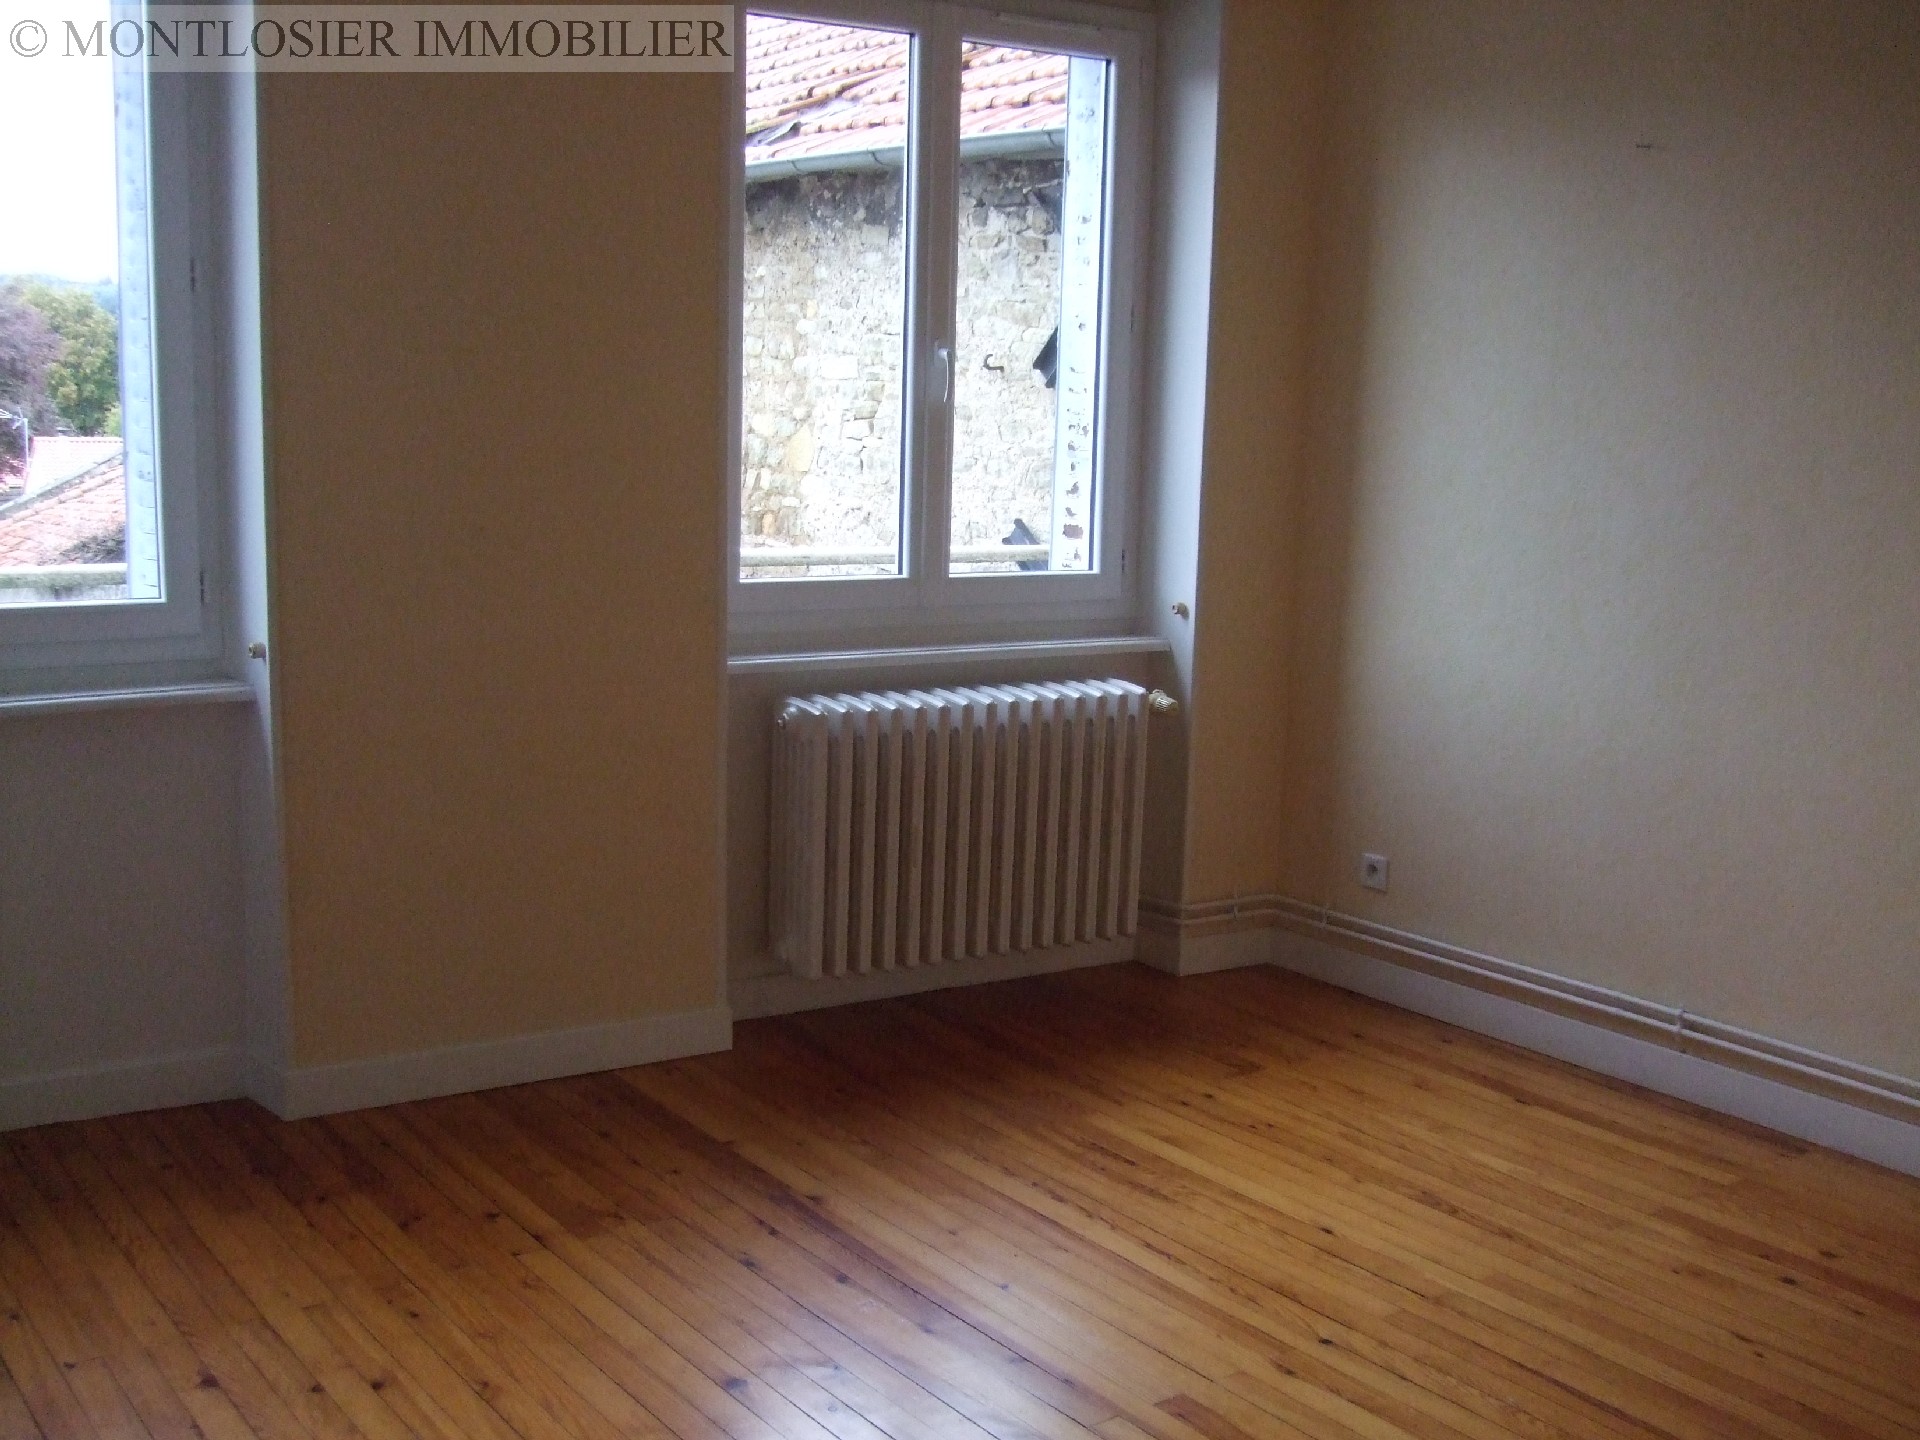 Appartement à vendre, AIGUEPERSE, 98,87 m², 3 pièces